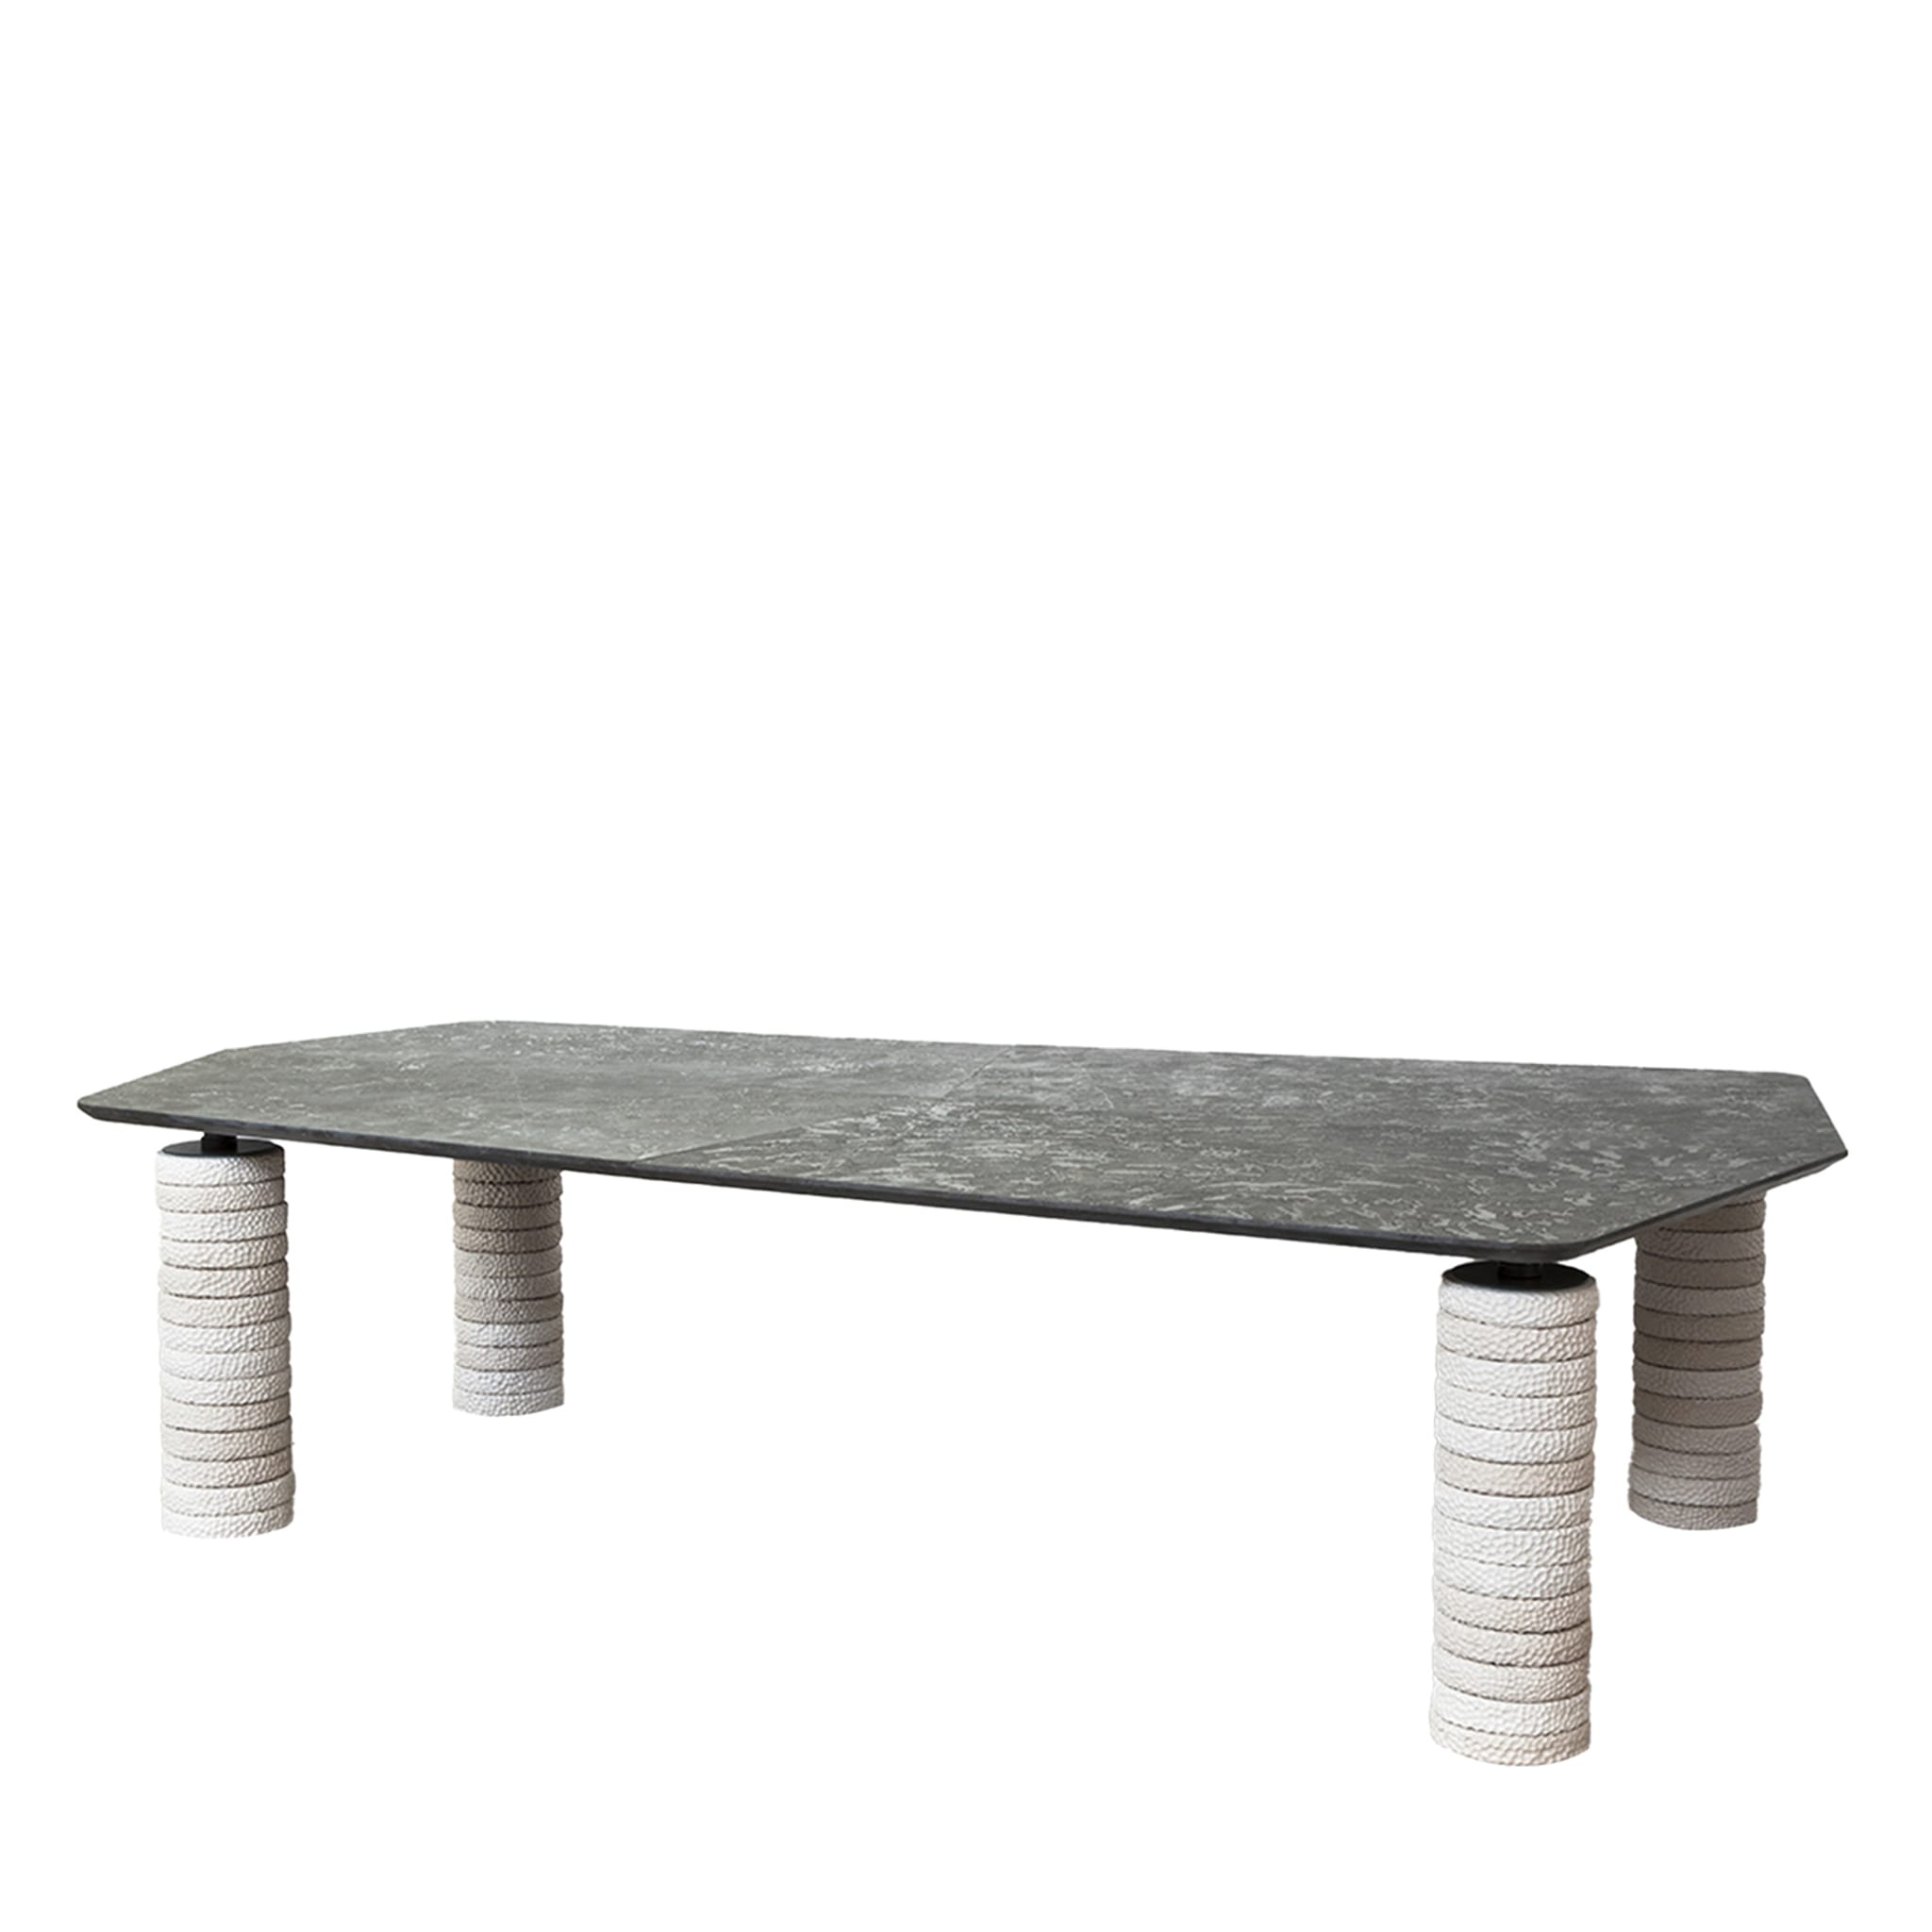 Manta Gray & White Table - Main view